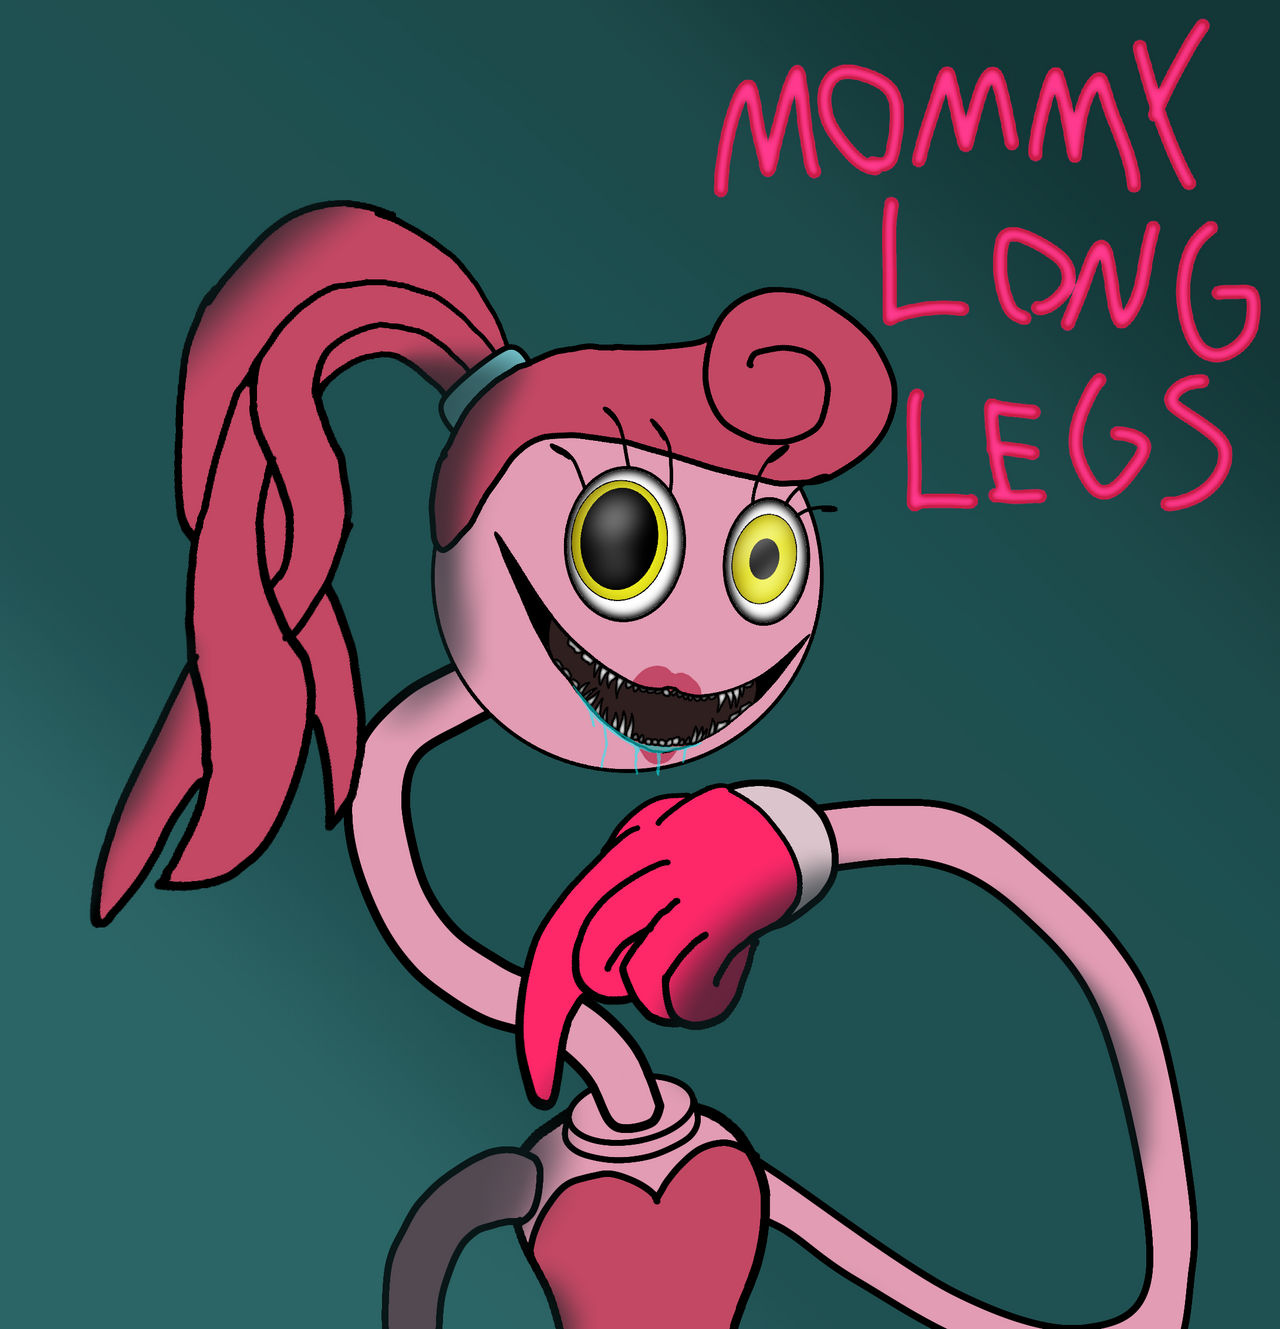 Mommy Long Legs on Poppy-Playtime-Fans - DeviantArt